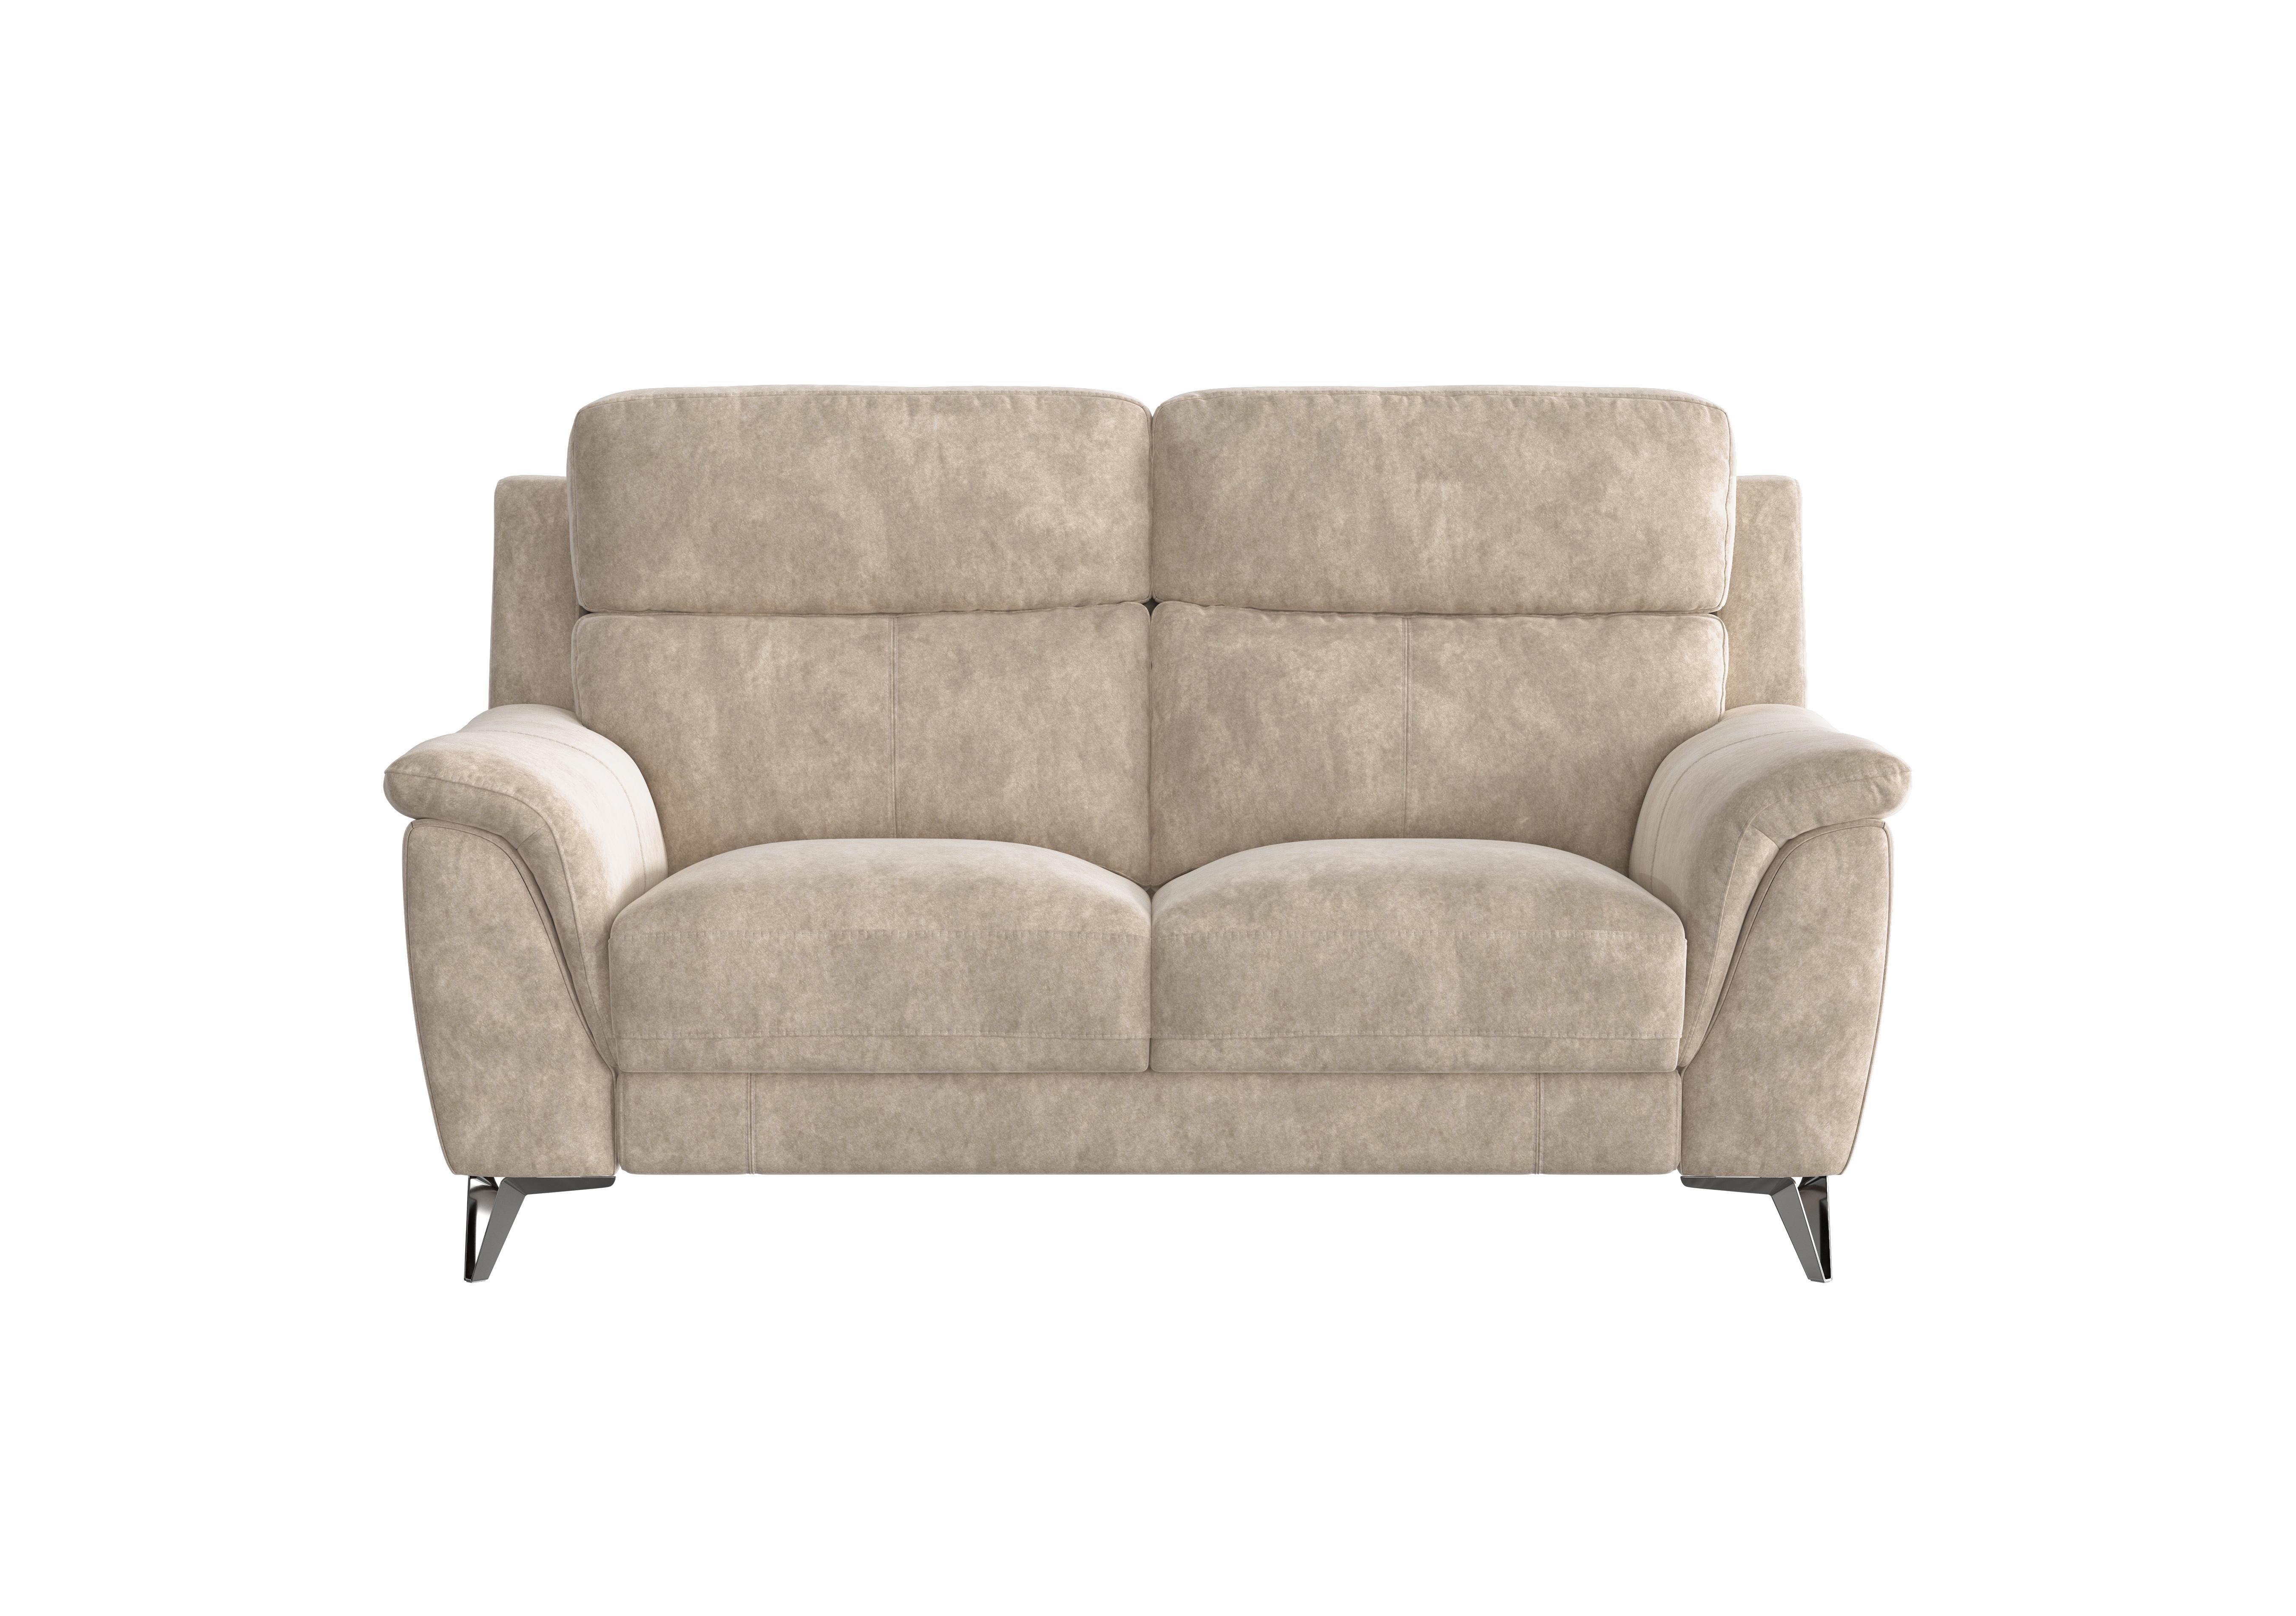 Contempo 2 Seater Fabric Sofa in Bfa-Bnn-R26 Fv2 Cream on Furniture Village